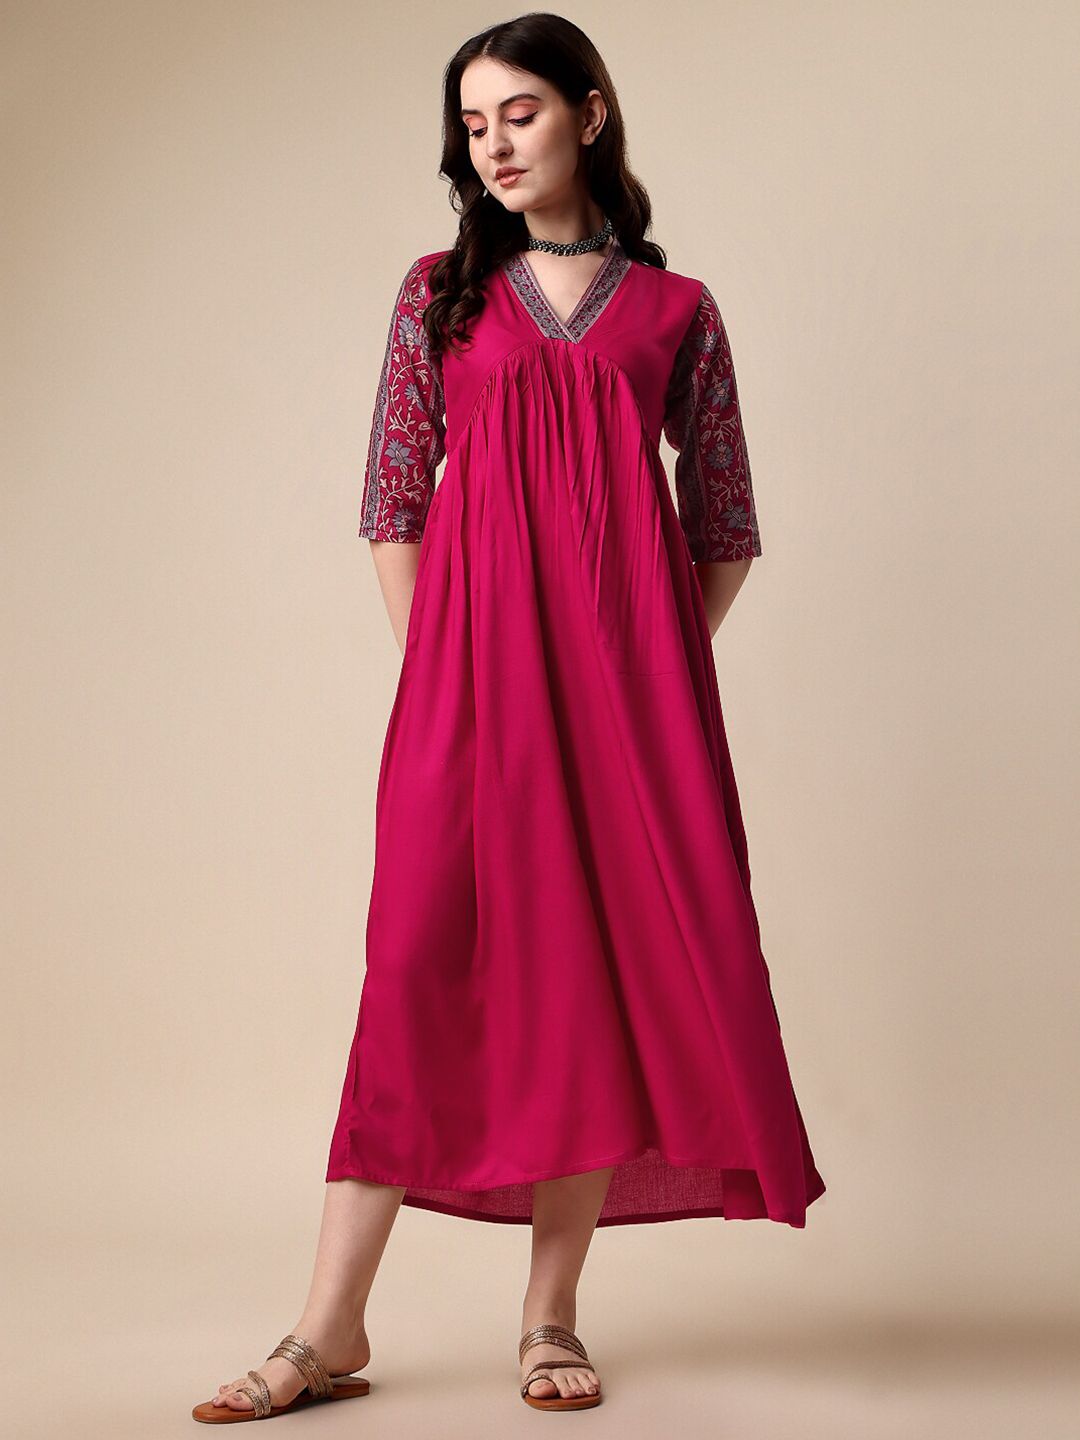 SHEETAL Associates V-Neck A-Line Midi Dress Price in India